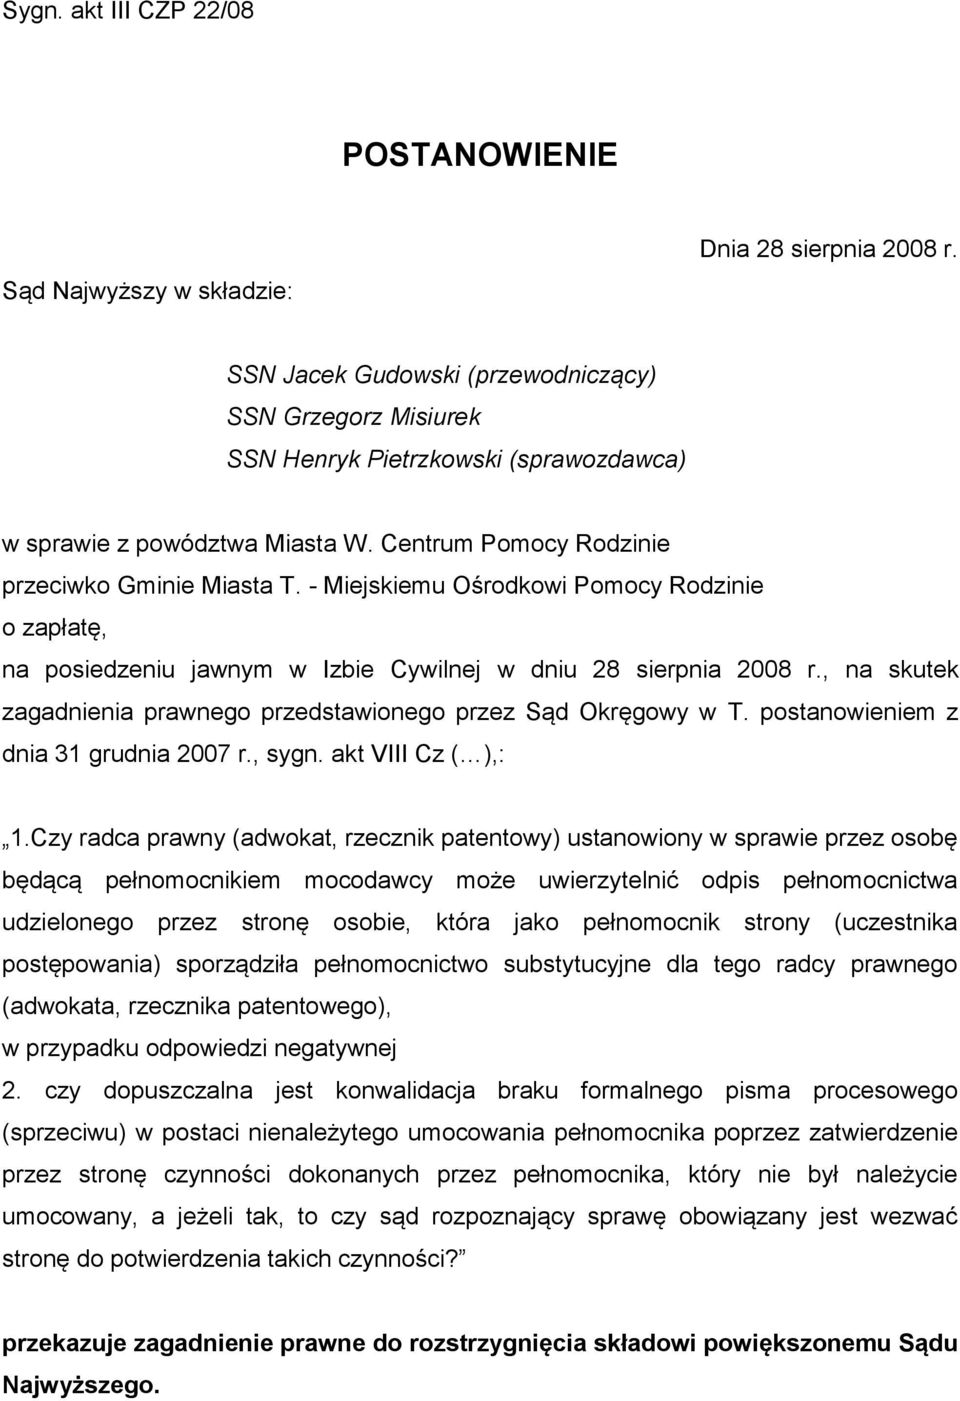 POSTANOWIENIE. SSN Jacek Gudowski (przewodniczący) SSN Grzegorz Misiurek  SSN Henryk Pietrzkowski (sprawozdawca) - PDF Free Download